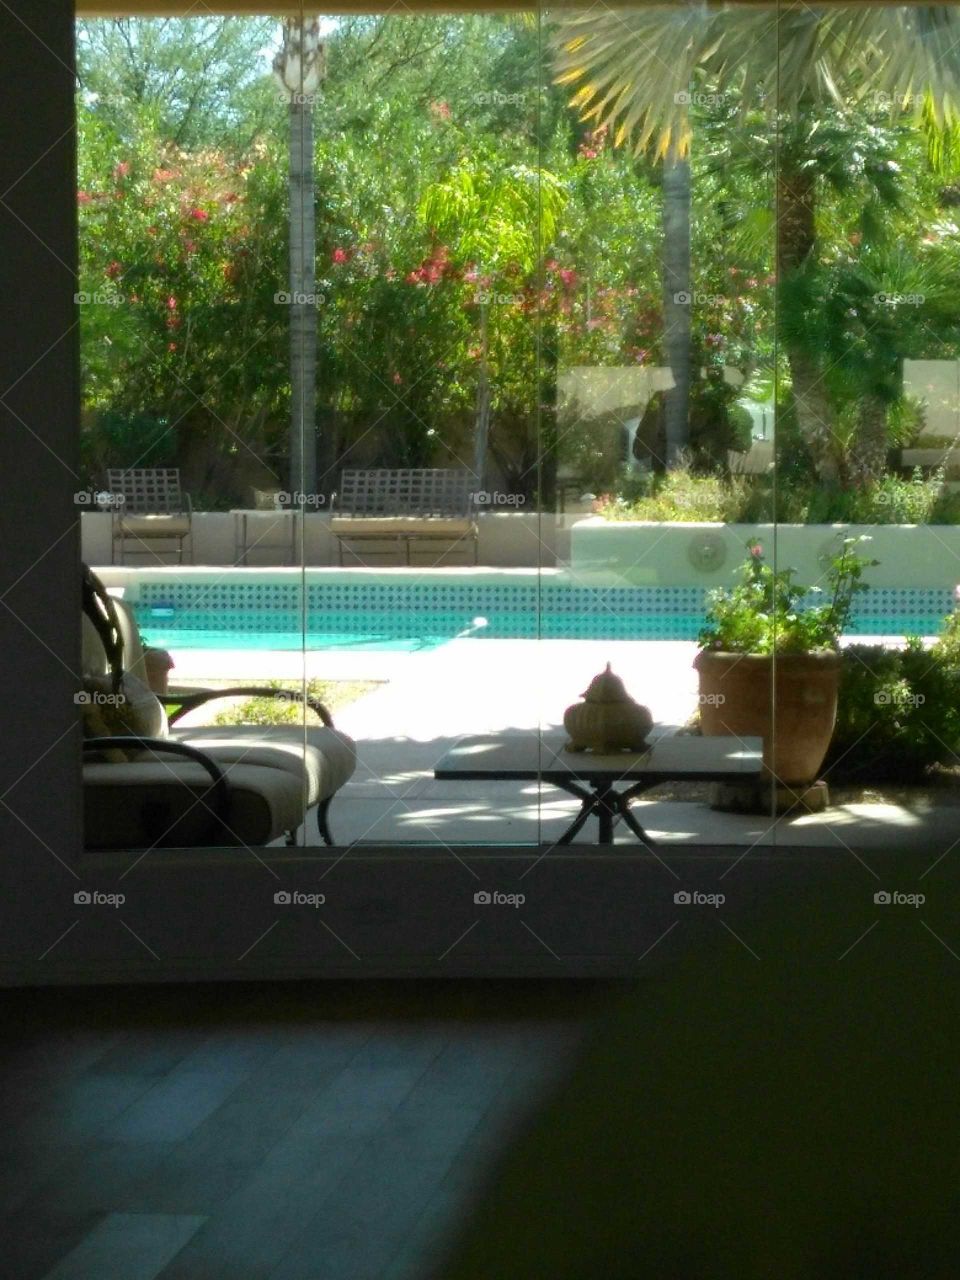 pool in backyard